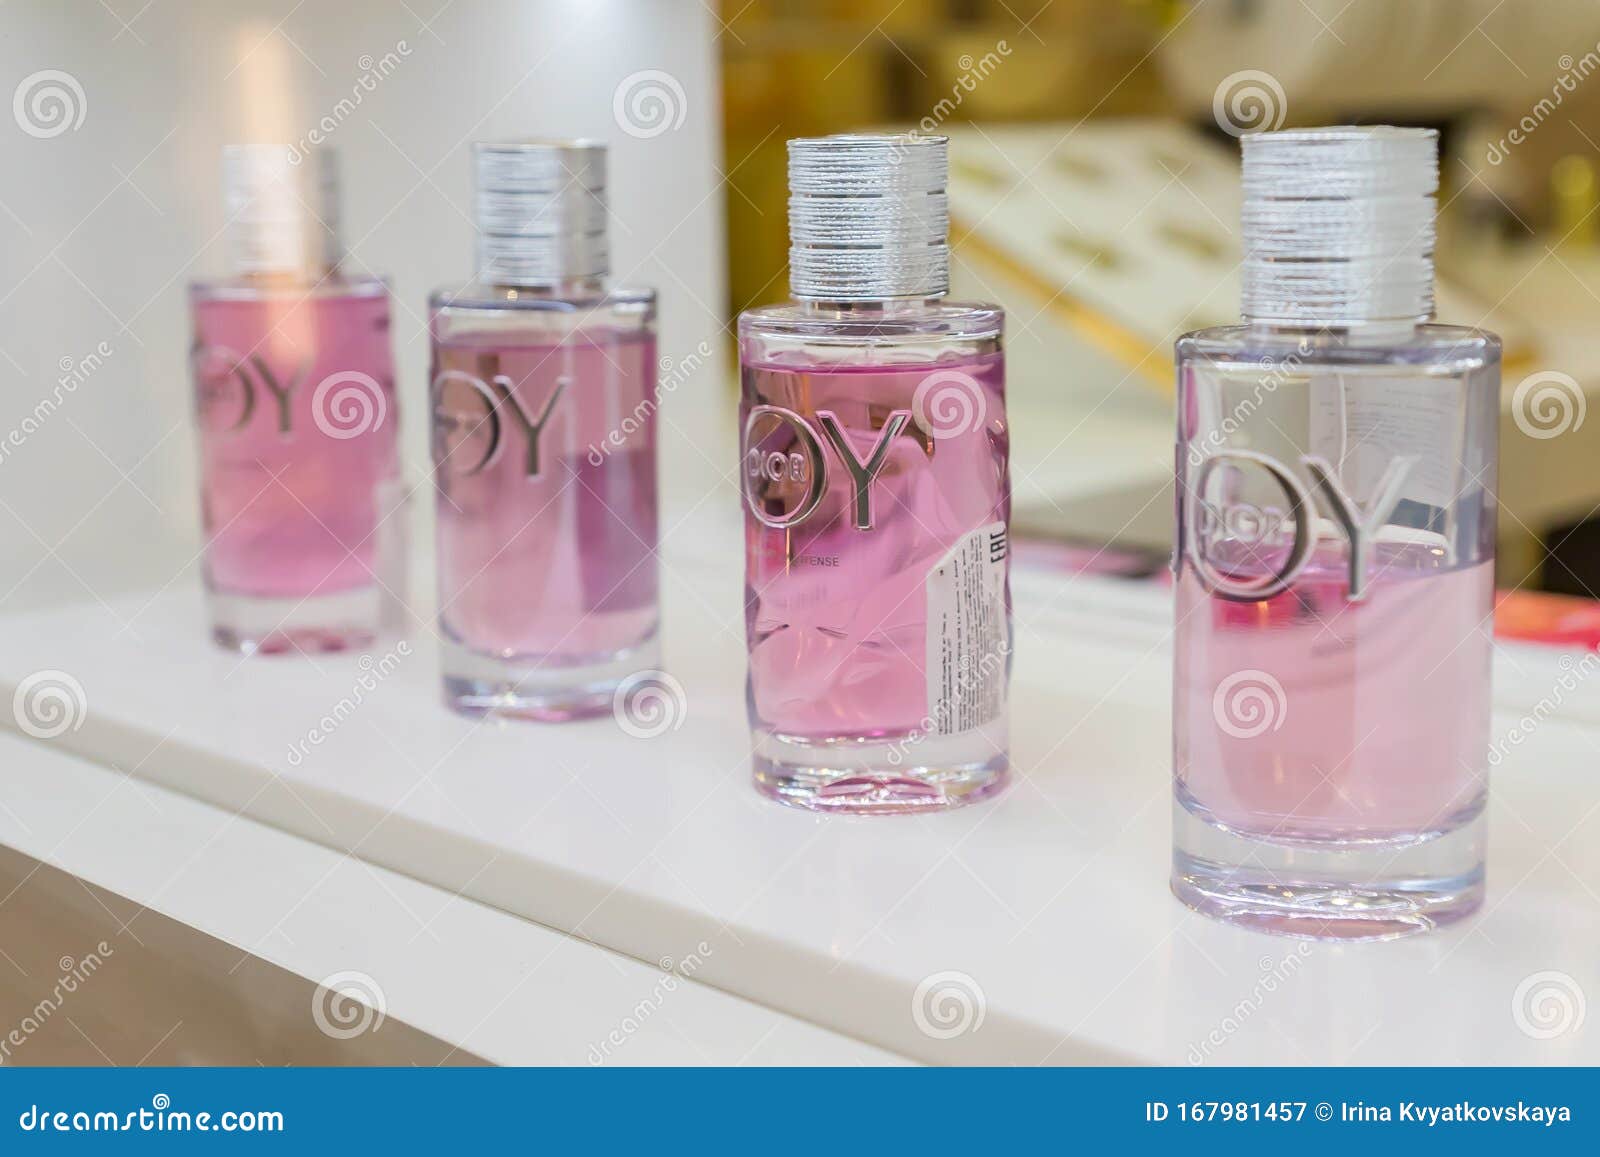 perfume shop joy